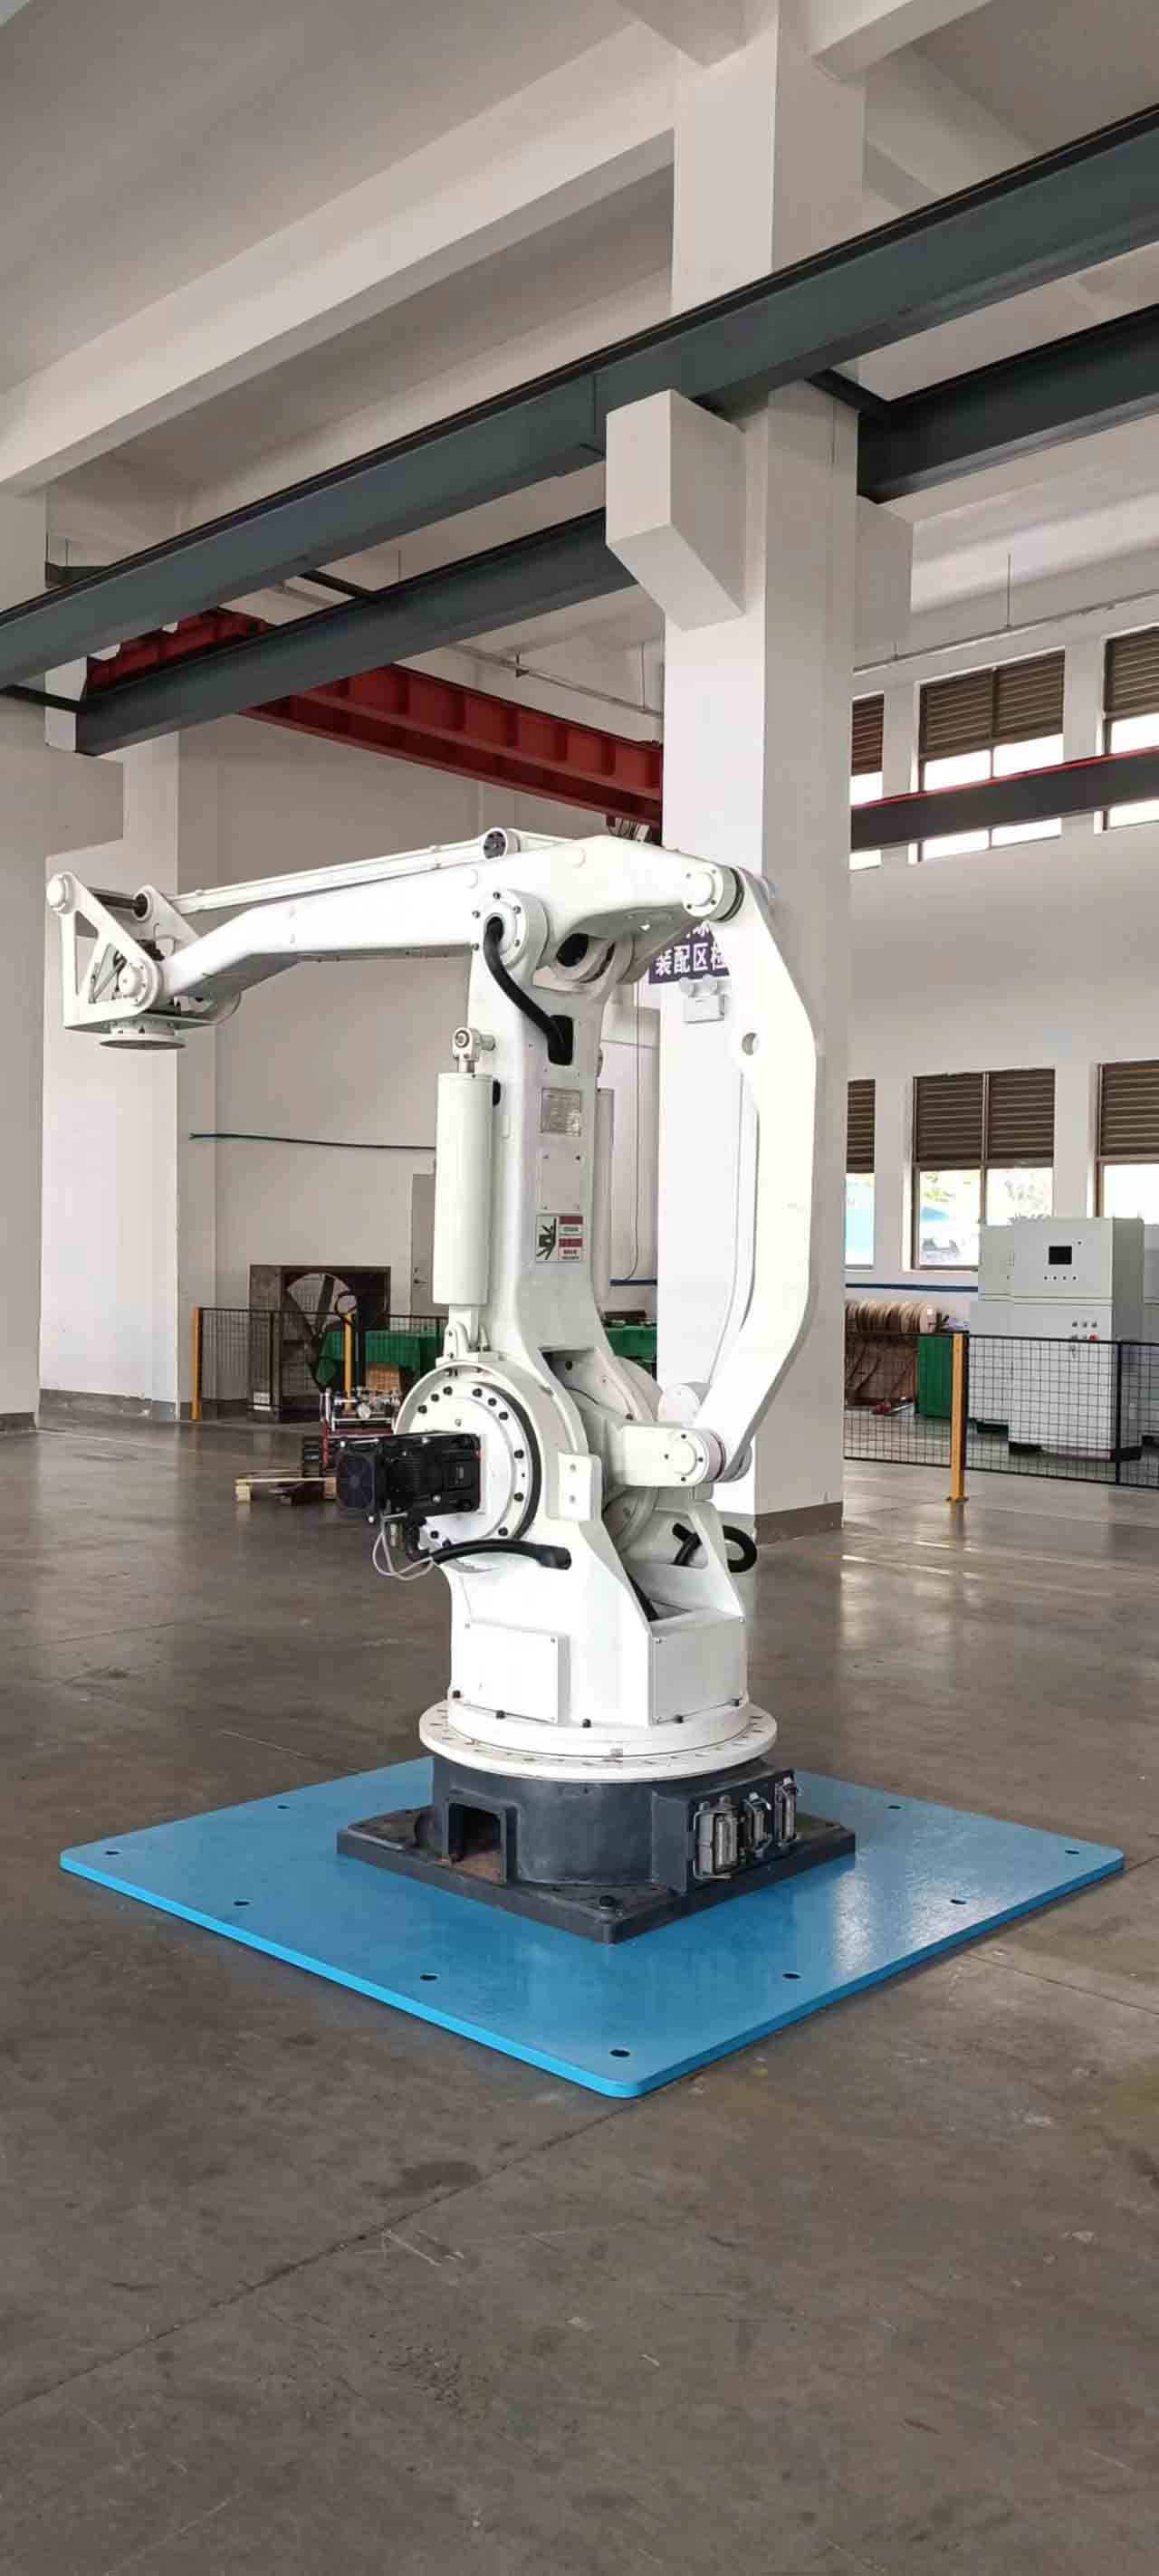 Робот-палетоукладчик грузоподъемностью 500 кг